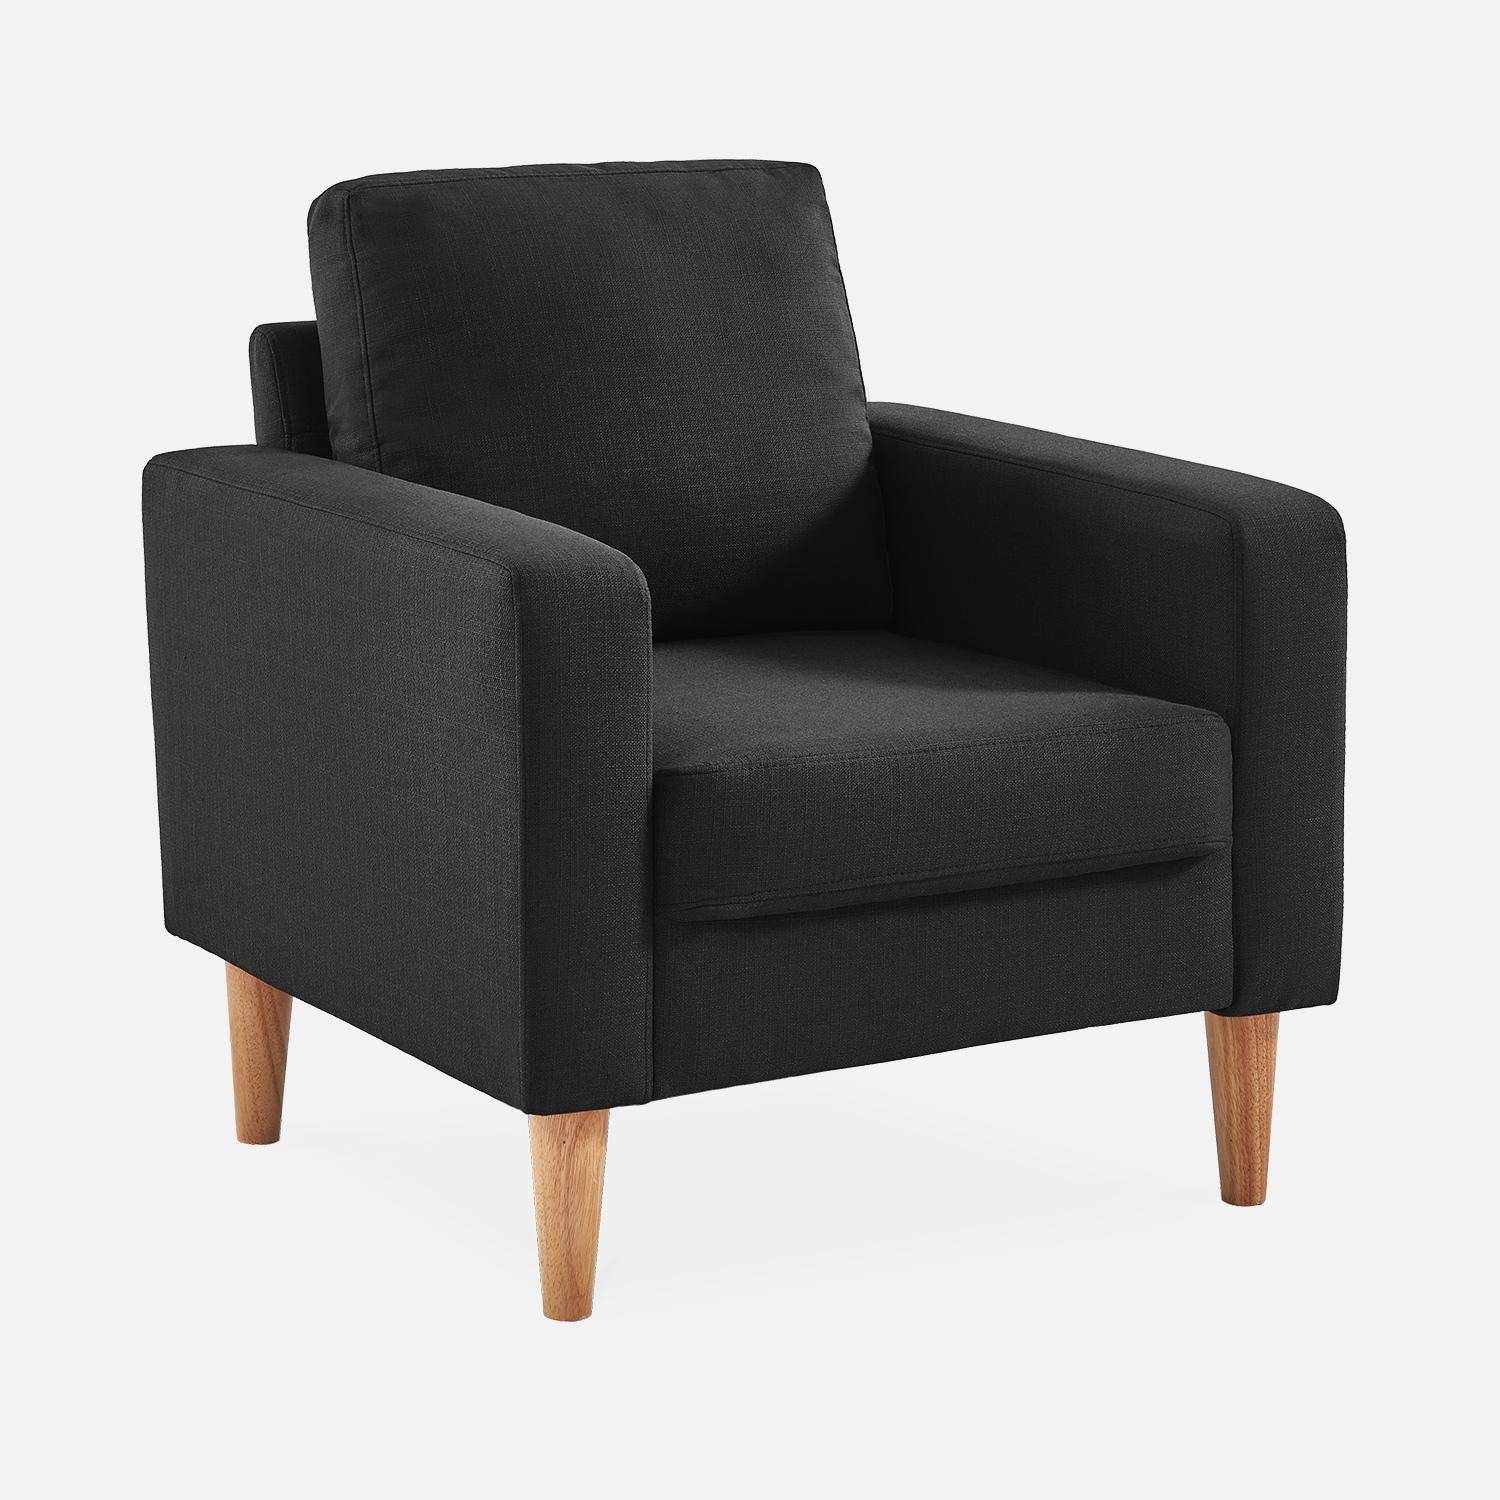 Donkergrijze stoffen zetel - Bjorn - 1-zits sofa met houten poten, Scandinavische stijl Photo2